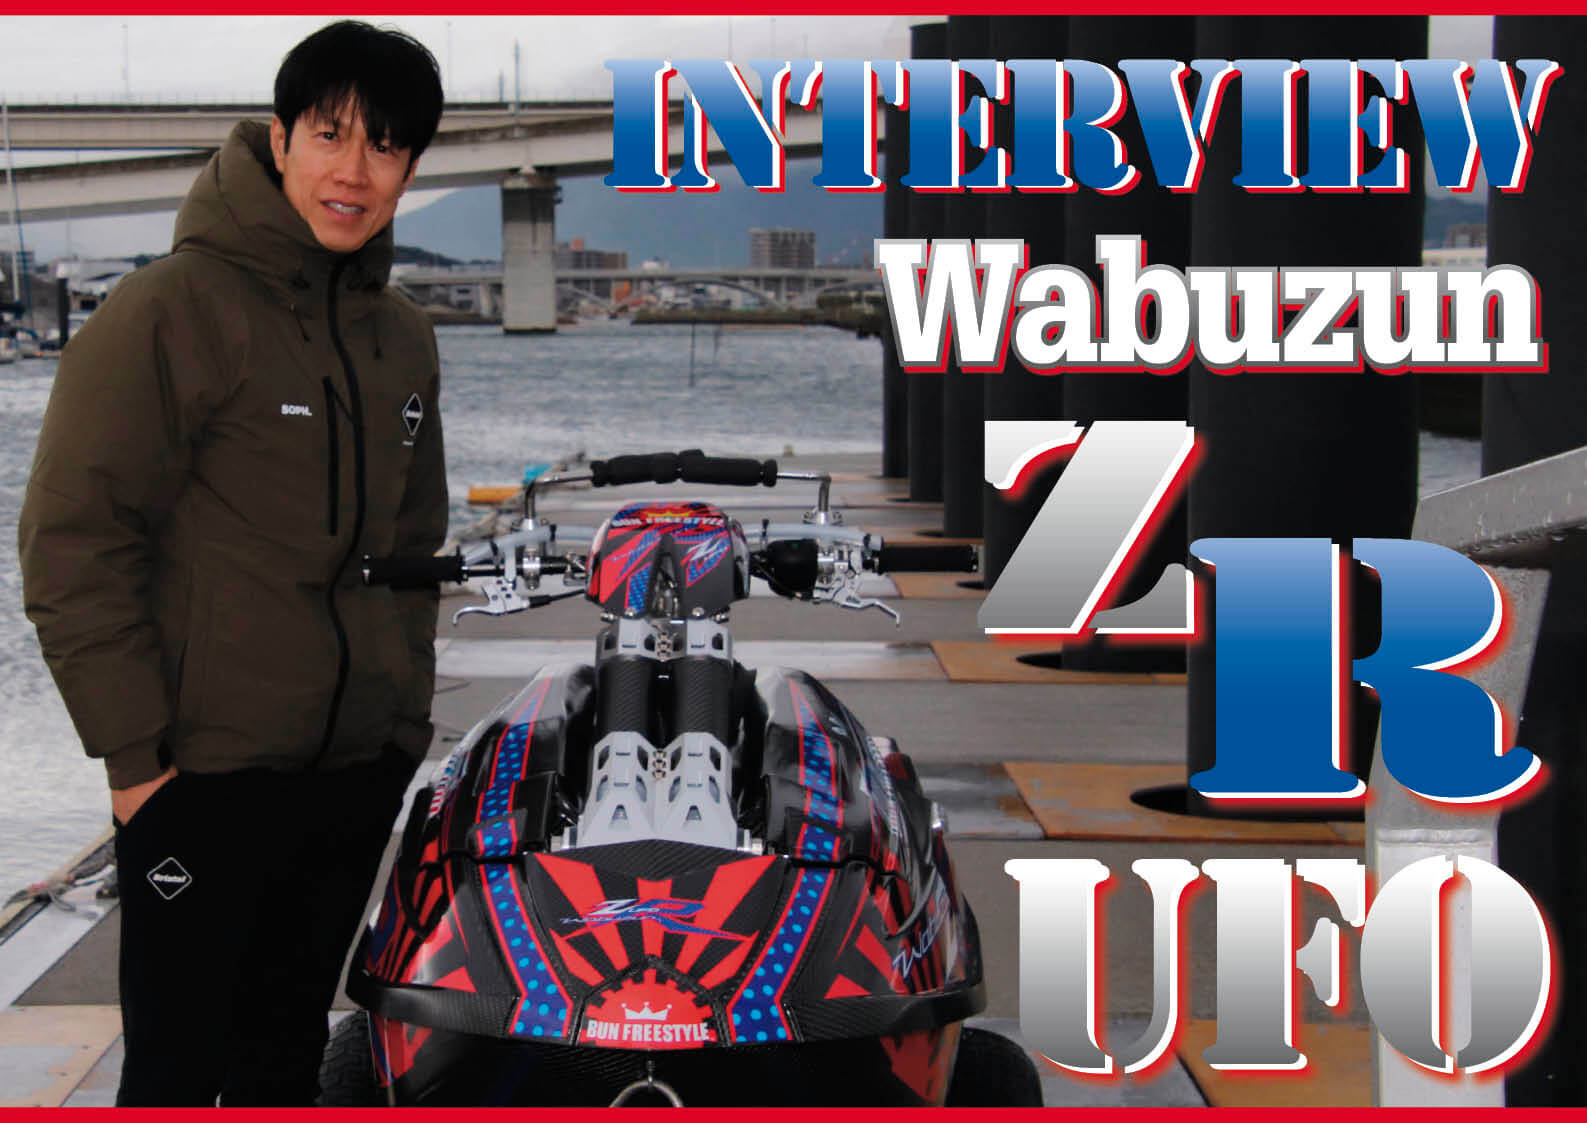 年のフリースタイルボート Wabuzun Zr Ufo ワブズン ゼットアール ユーフォー 誕生 ジェットスキー 水上バイク ワールド ジェットスポーツマガジン